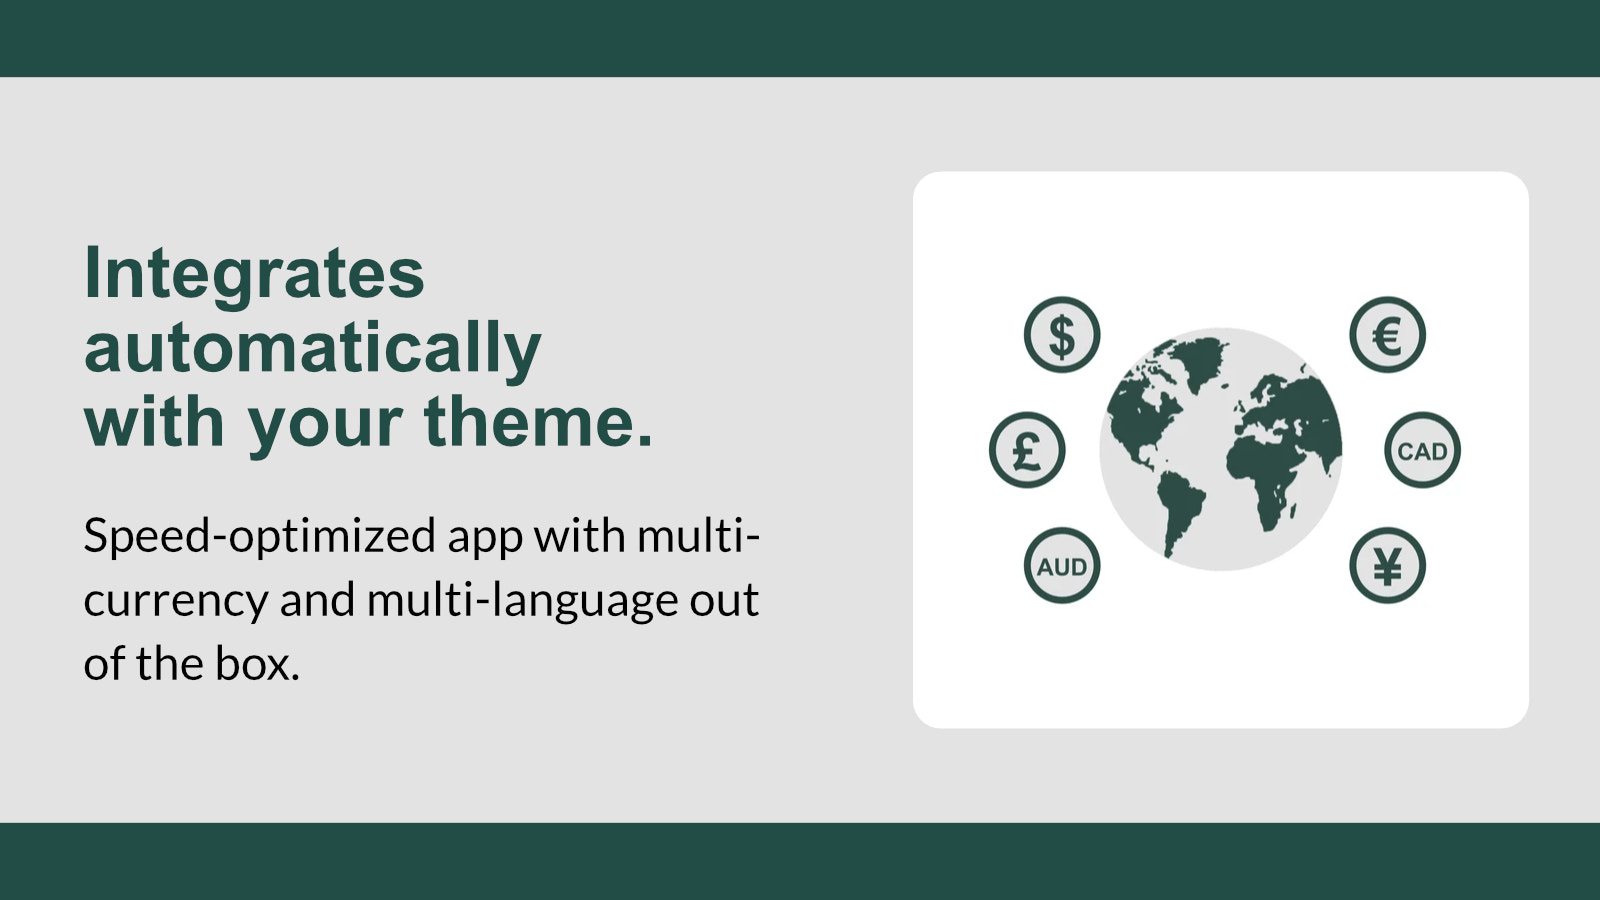 Snelheid-geoptimaliseerde app met multi-valuta en meertalig.